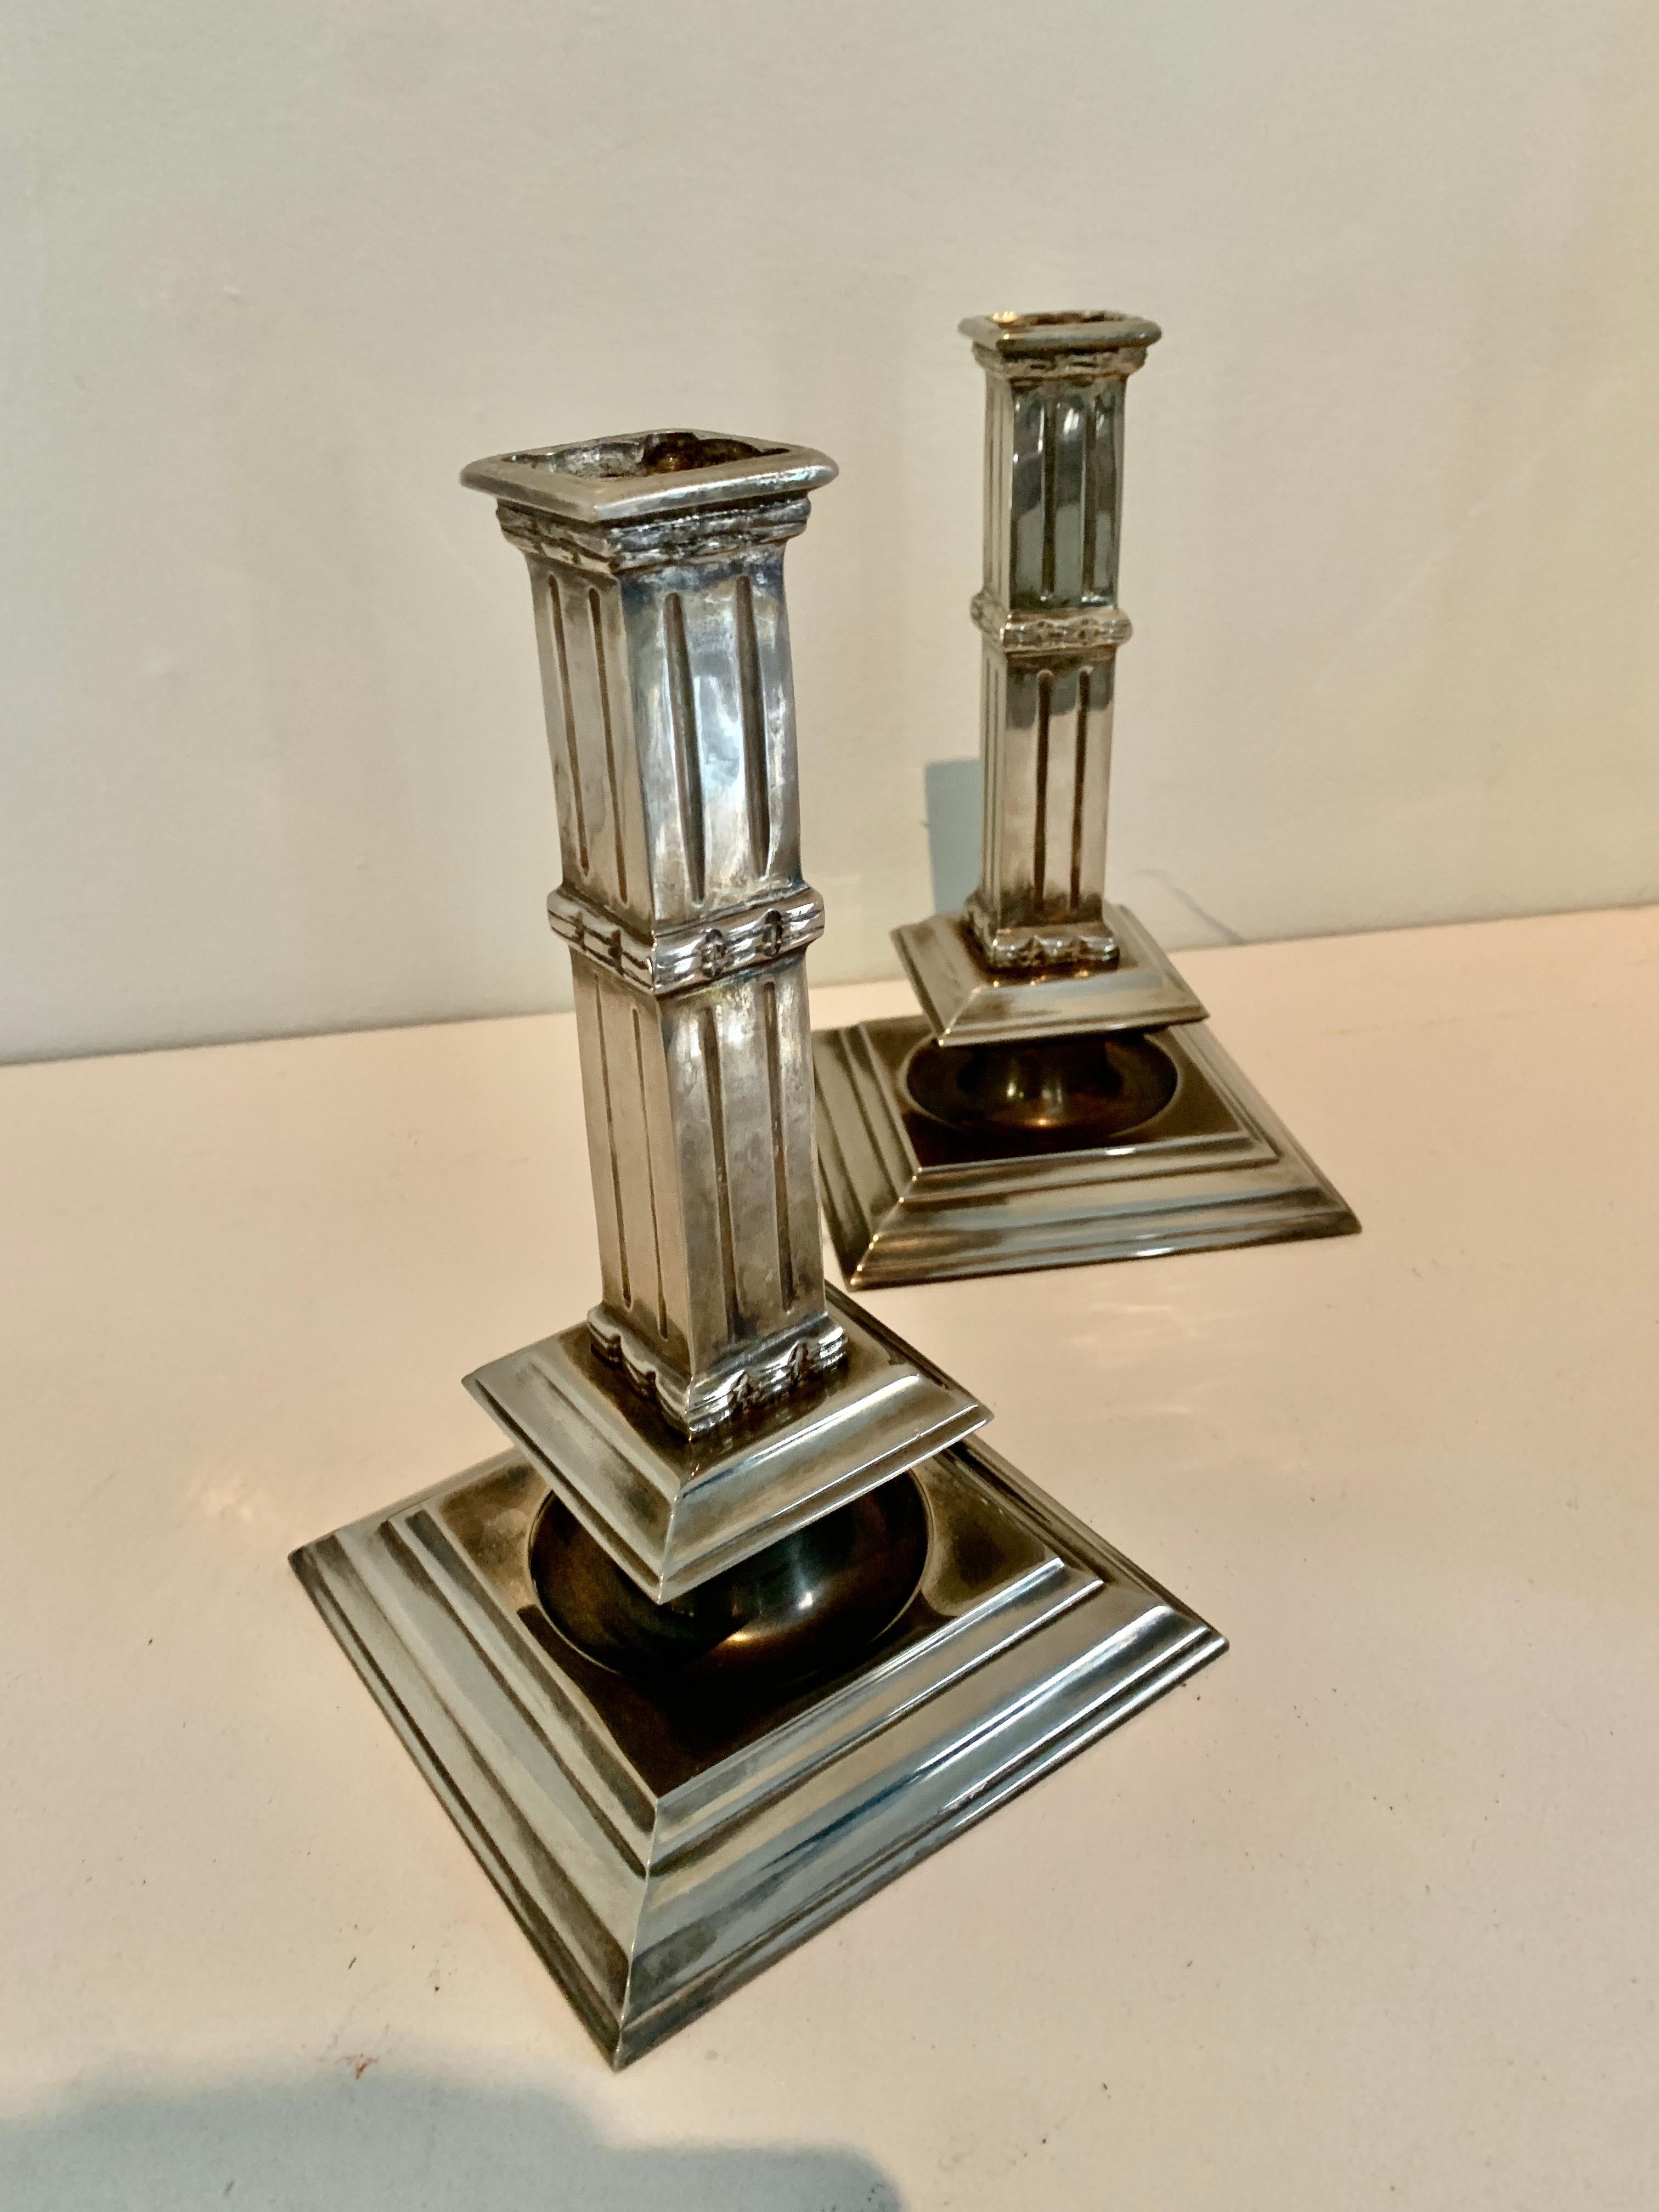 Une paire de chandeliers en métal argenté merveilleusement architecturée - la paire rappelle les colonnes et est un compliment pour toute table à manger, manteau de cheminée ou console. La finition est un argent poli d'une grande profondeur. Exquis,